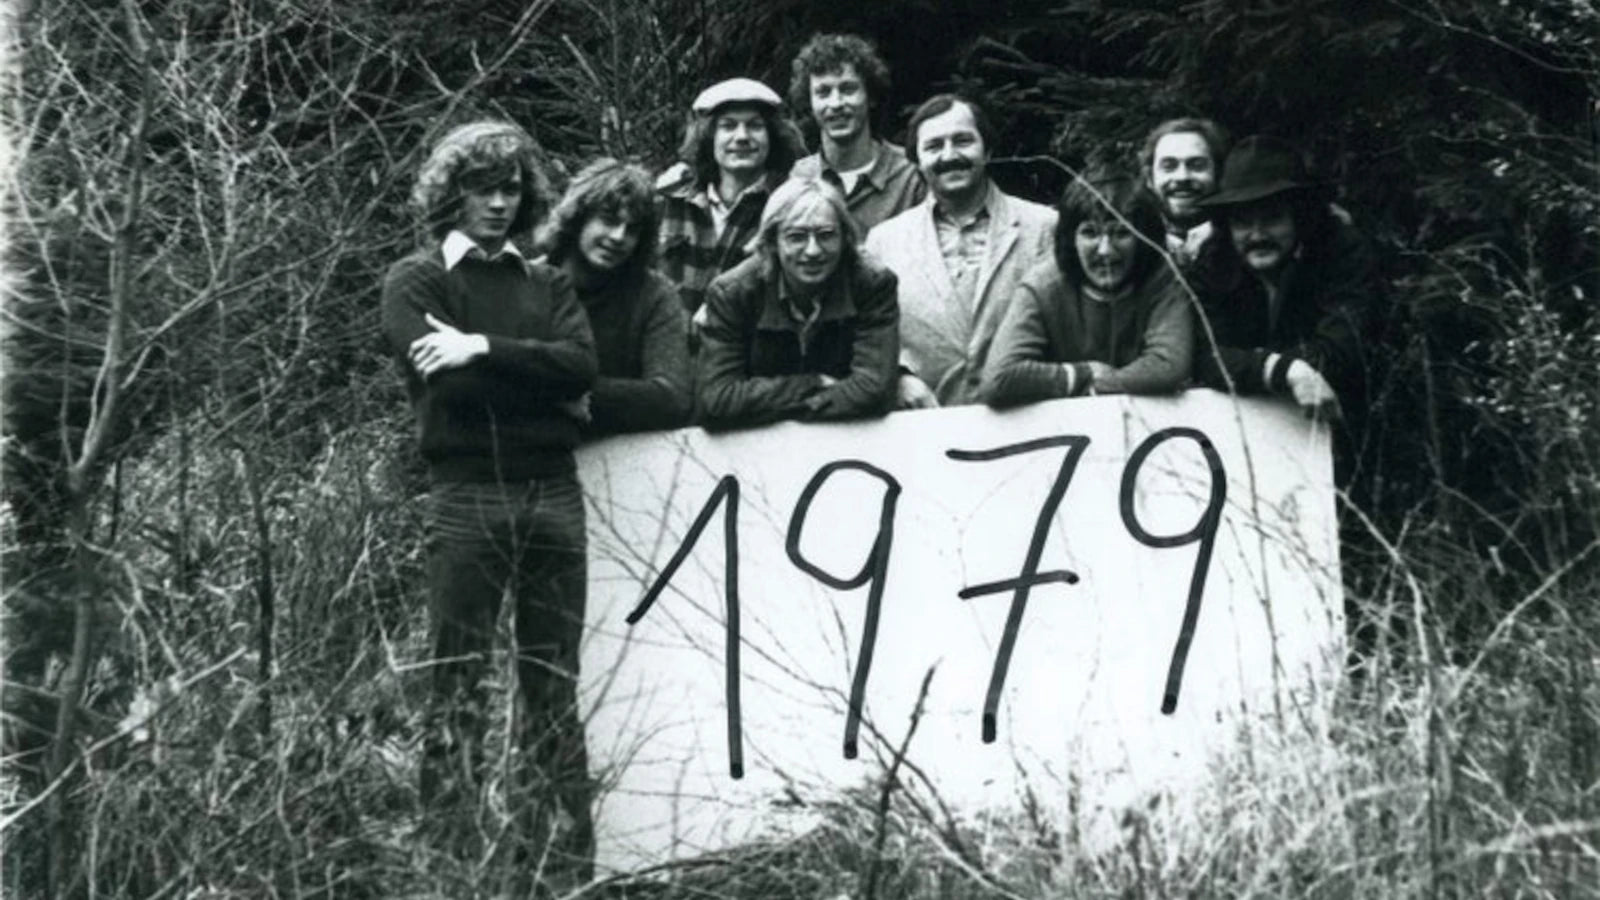 Das Gründungsfoto der Schreinerei Holzmanufaktur aus dem Jahr 1979